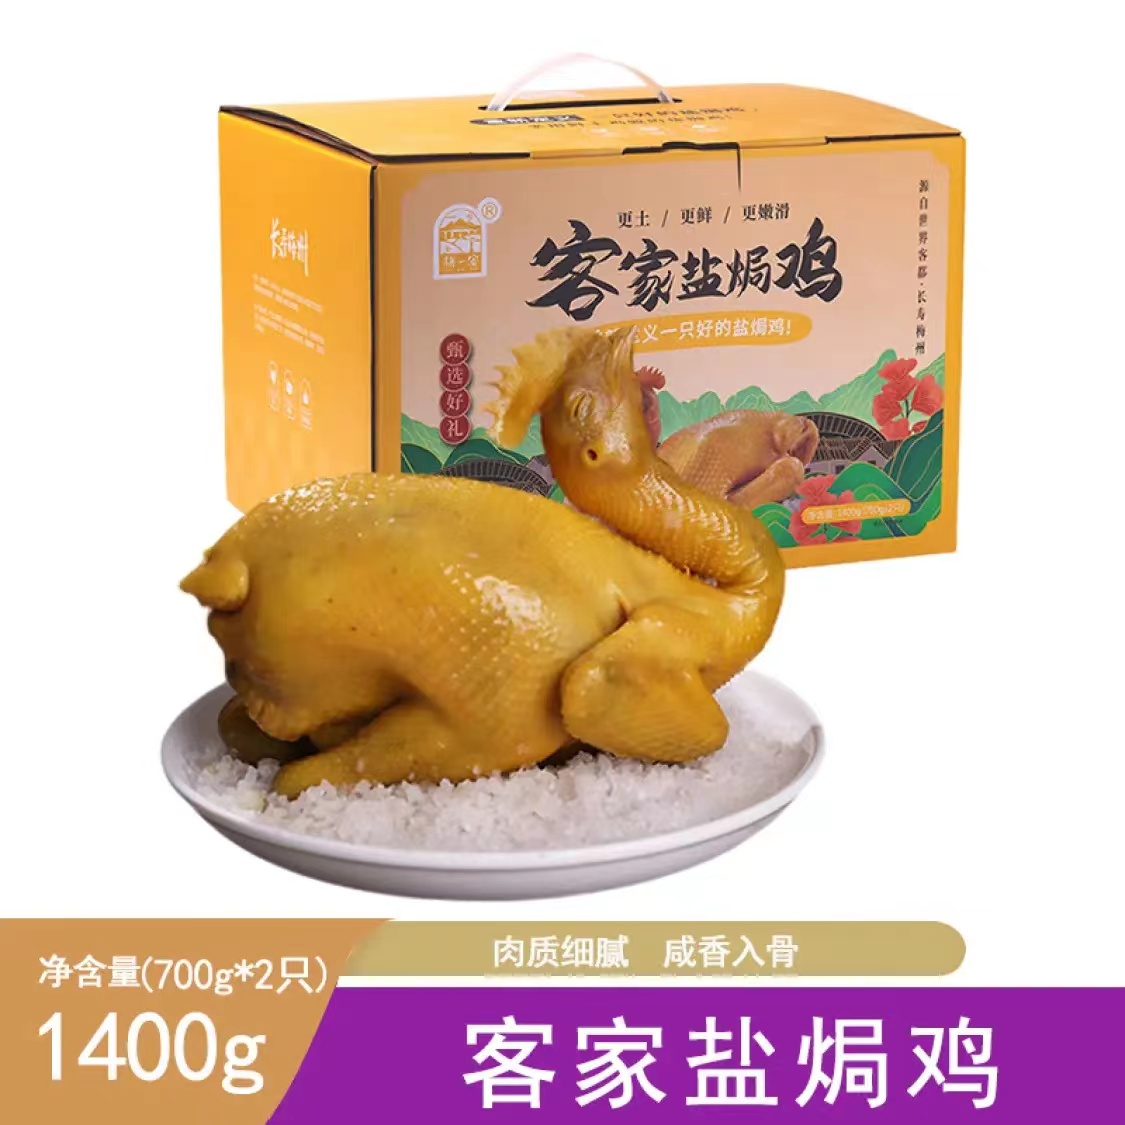 【预制菜】梅一客梅州客家特产盐焗鸡整只700g